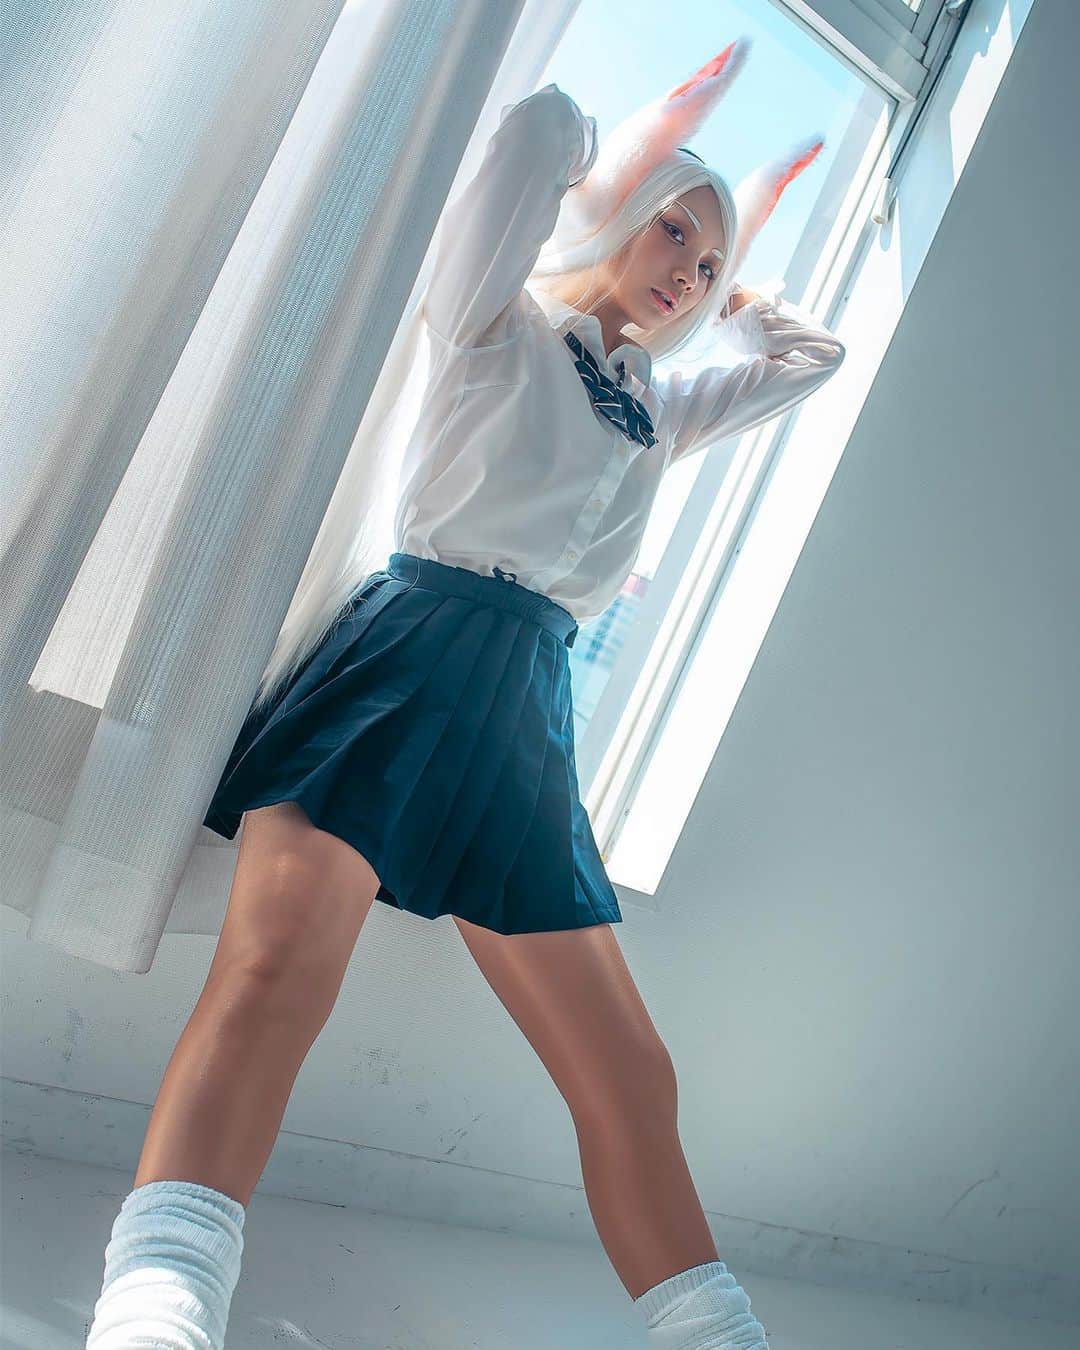 ふなこのインスタグラム：「【僕のヒーローアカデミア】 ミルコ/兎山ルミ ✨ミラクルミルコ✨  #僕のヒーローアカデミア #ヒロアカ #ミルコ #兎山ルミ #bokunoheroacademia #hiroaka #miruko #コスプレ #コスプレイヤー #cosplayer #cos #cosplay #ゲーム #game #moe #cosplaygirl #角色扮演 #photooftheday #japan #japangirl #instagood #model #kawaii #follow #followme  #japanese  #japanesegirl #hunako」